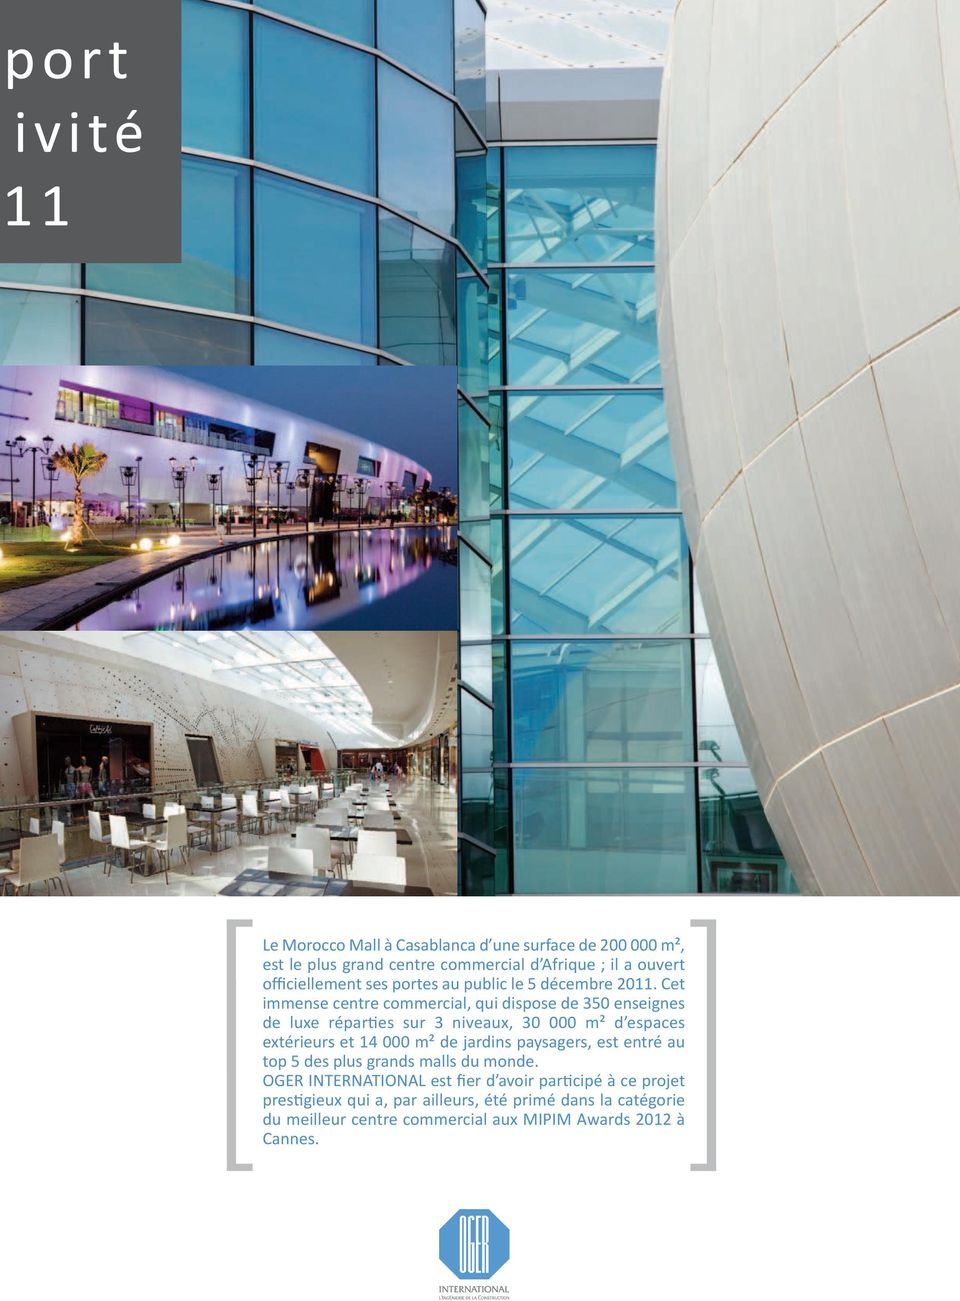 Cet immense centre commercial, qui dispose de 350 enseignes de luxe répares sur 3 niveaux, 30 000 m² d espaces extérieurs et 14 000 m² de